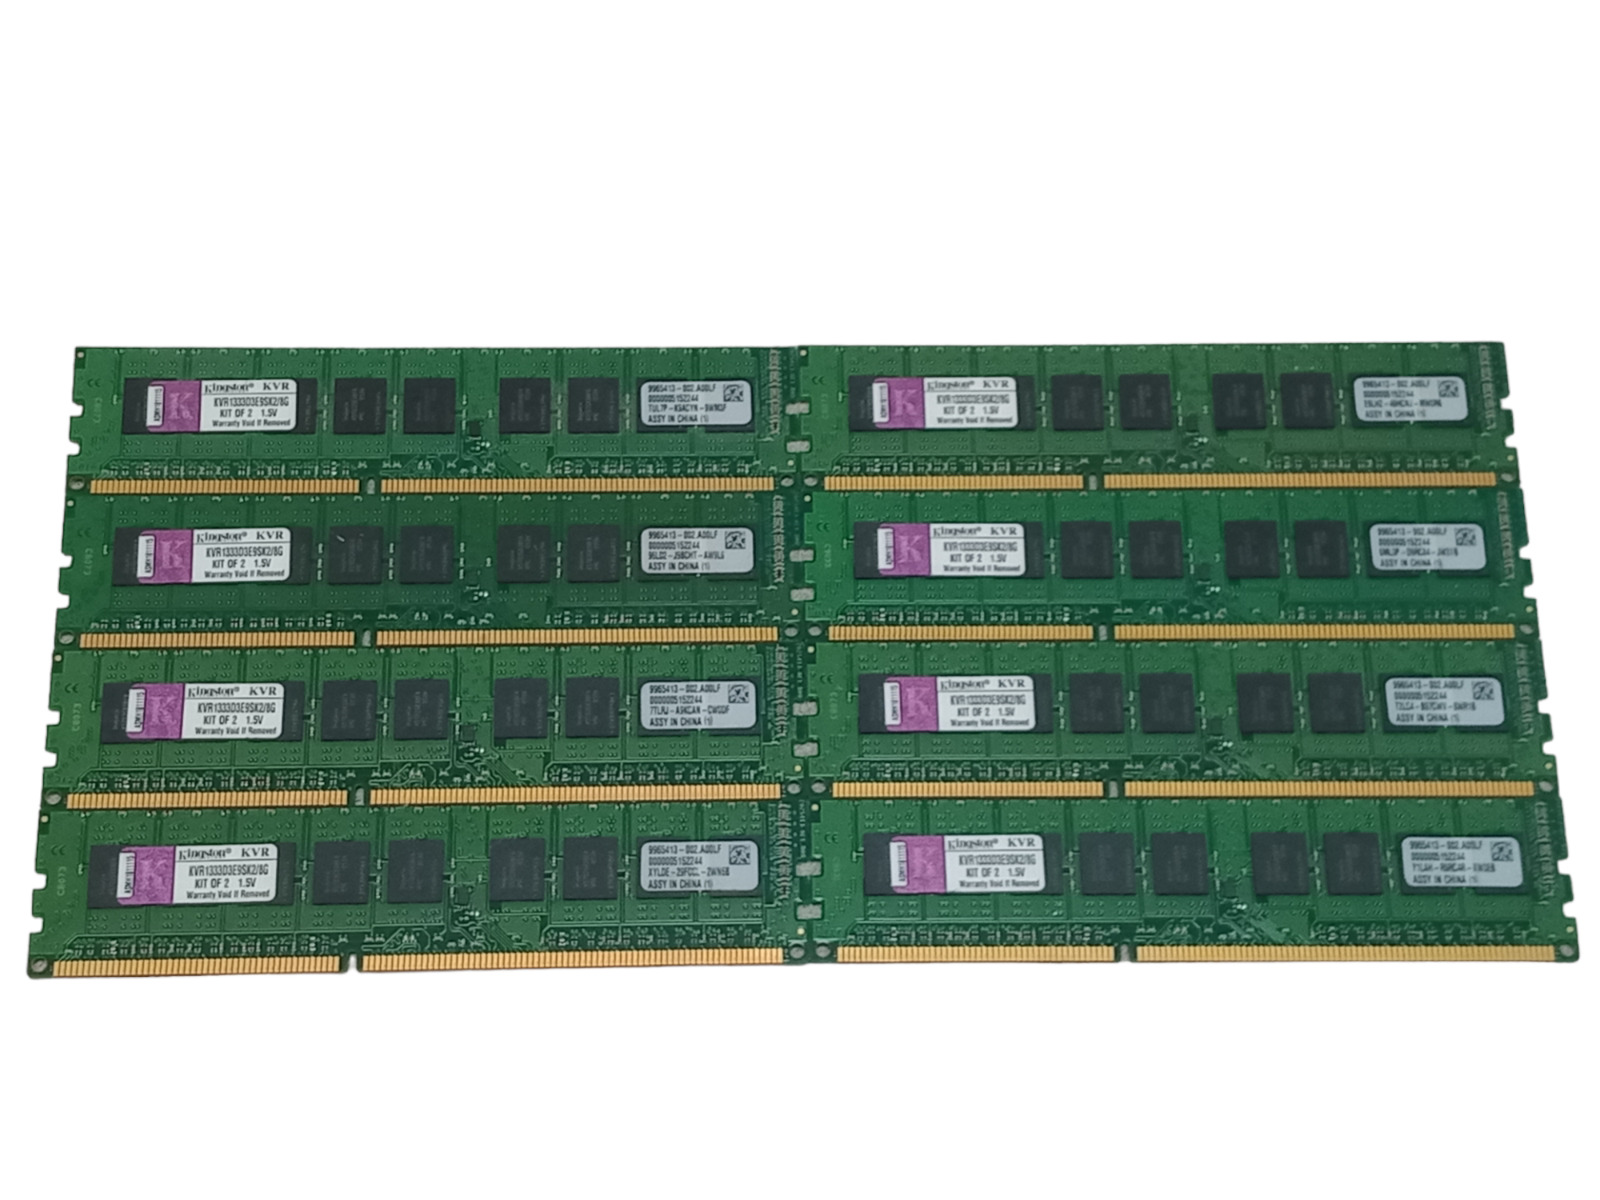 Kit x8 Kingston KVR1333D3E9SK2/8G 32GB (4GBx8) PC3-10600 DDR3-1333 ECC DIMM RAM